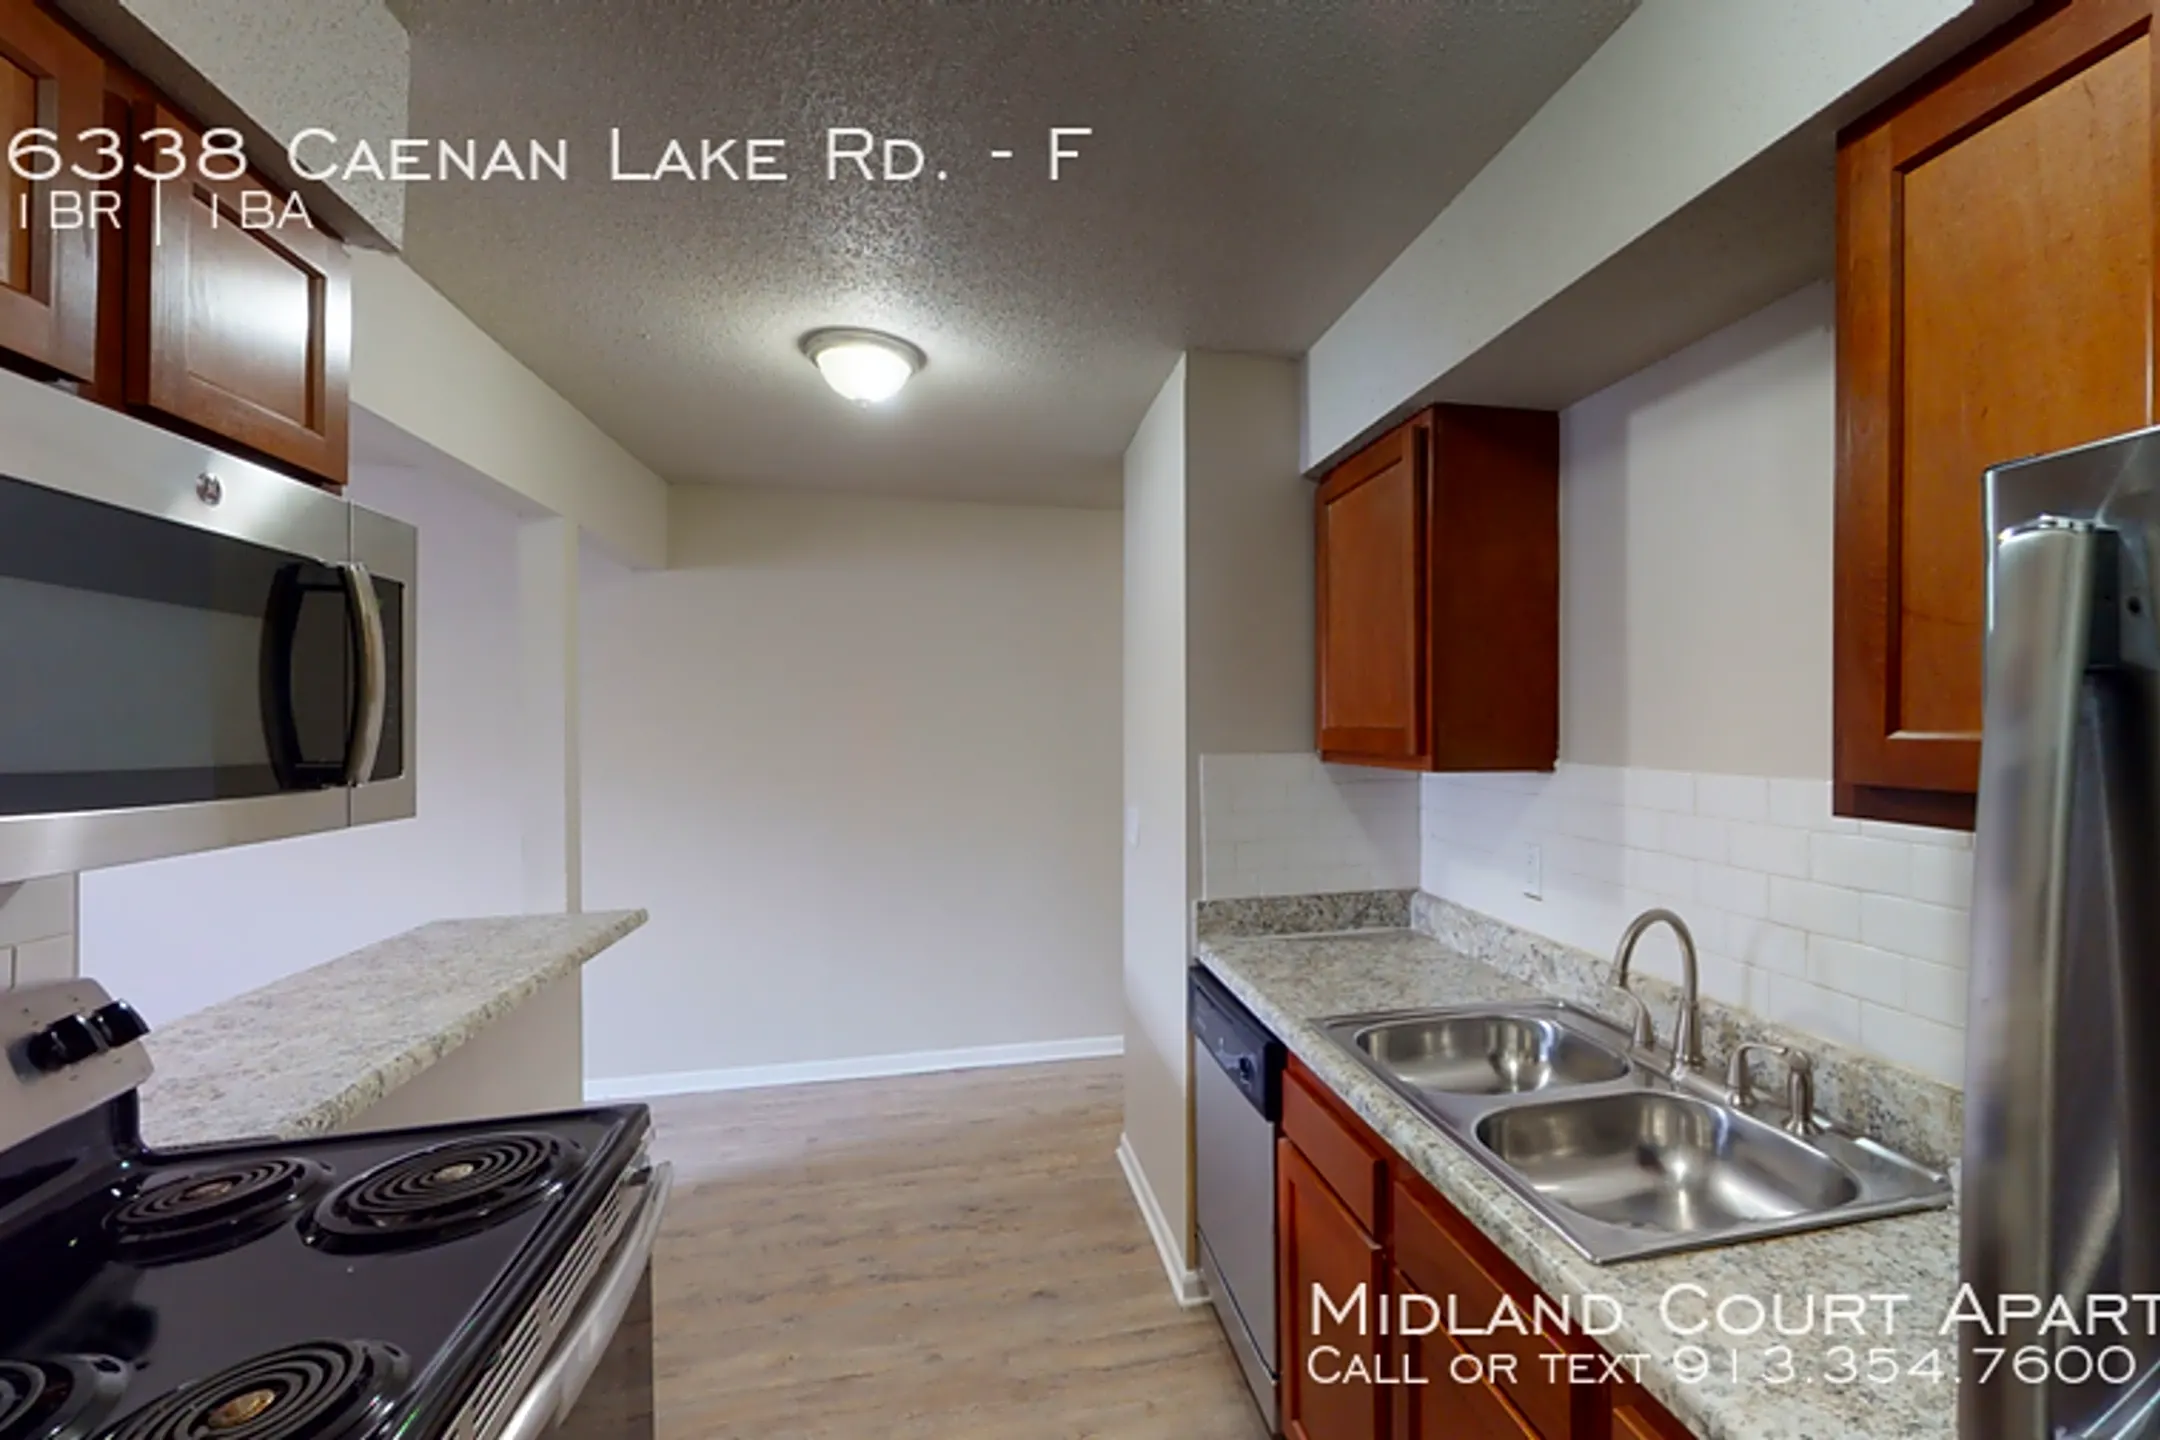 Kitchen - Midland Court - Shawnee, KS